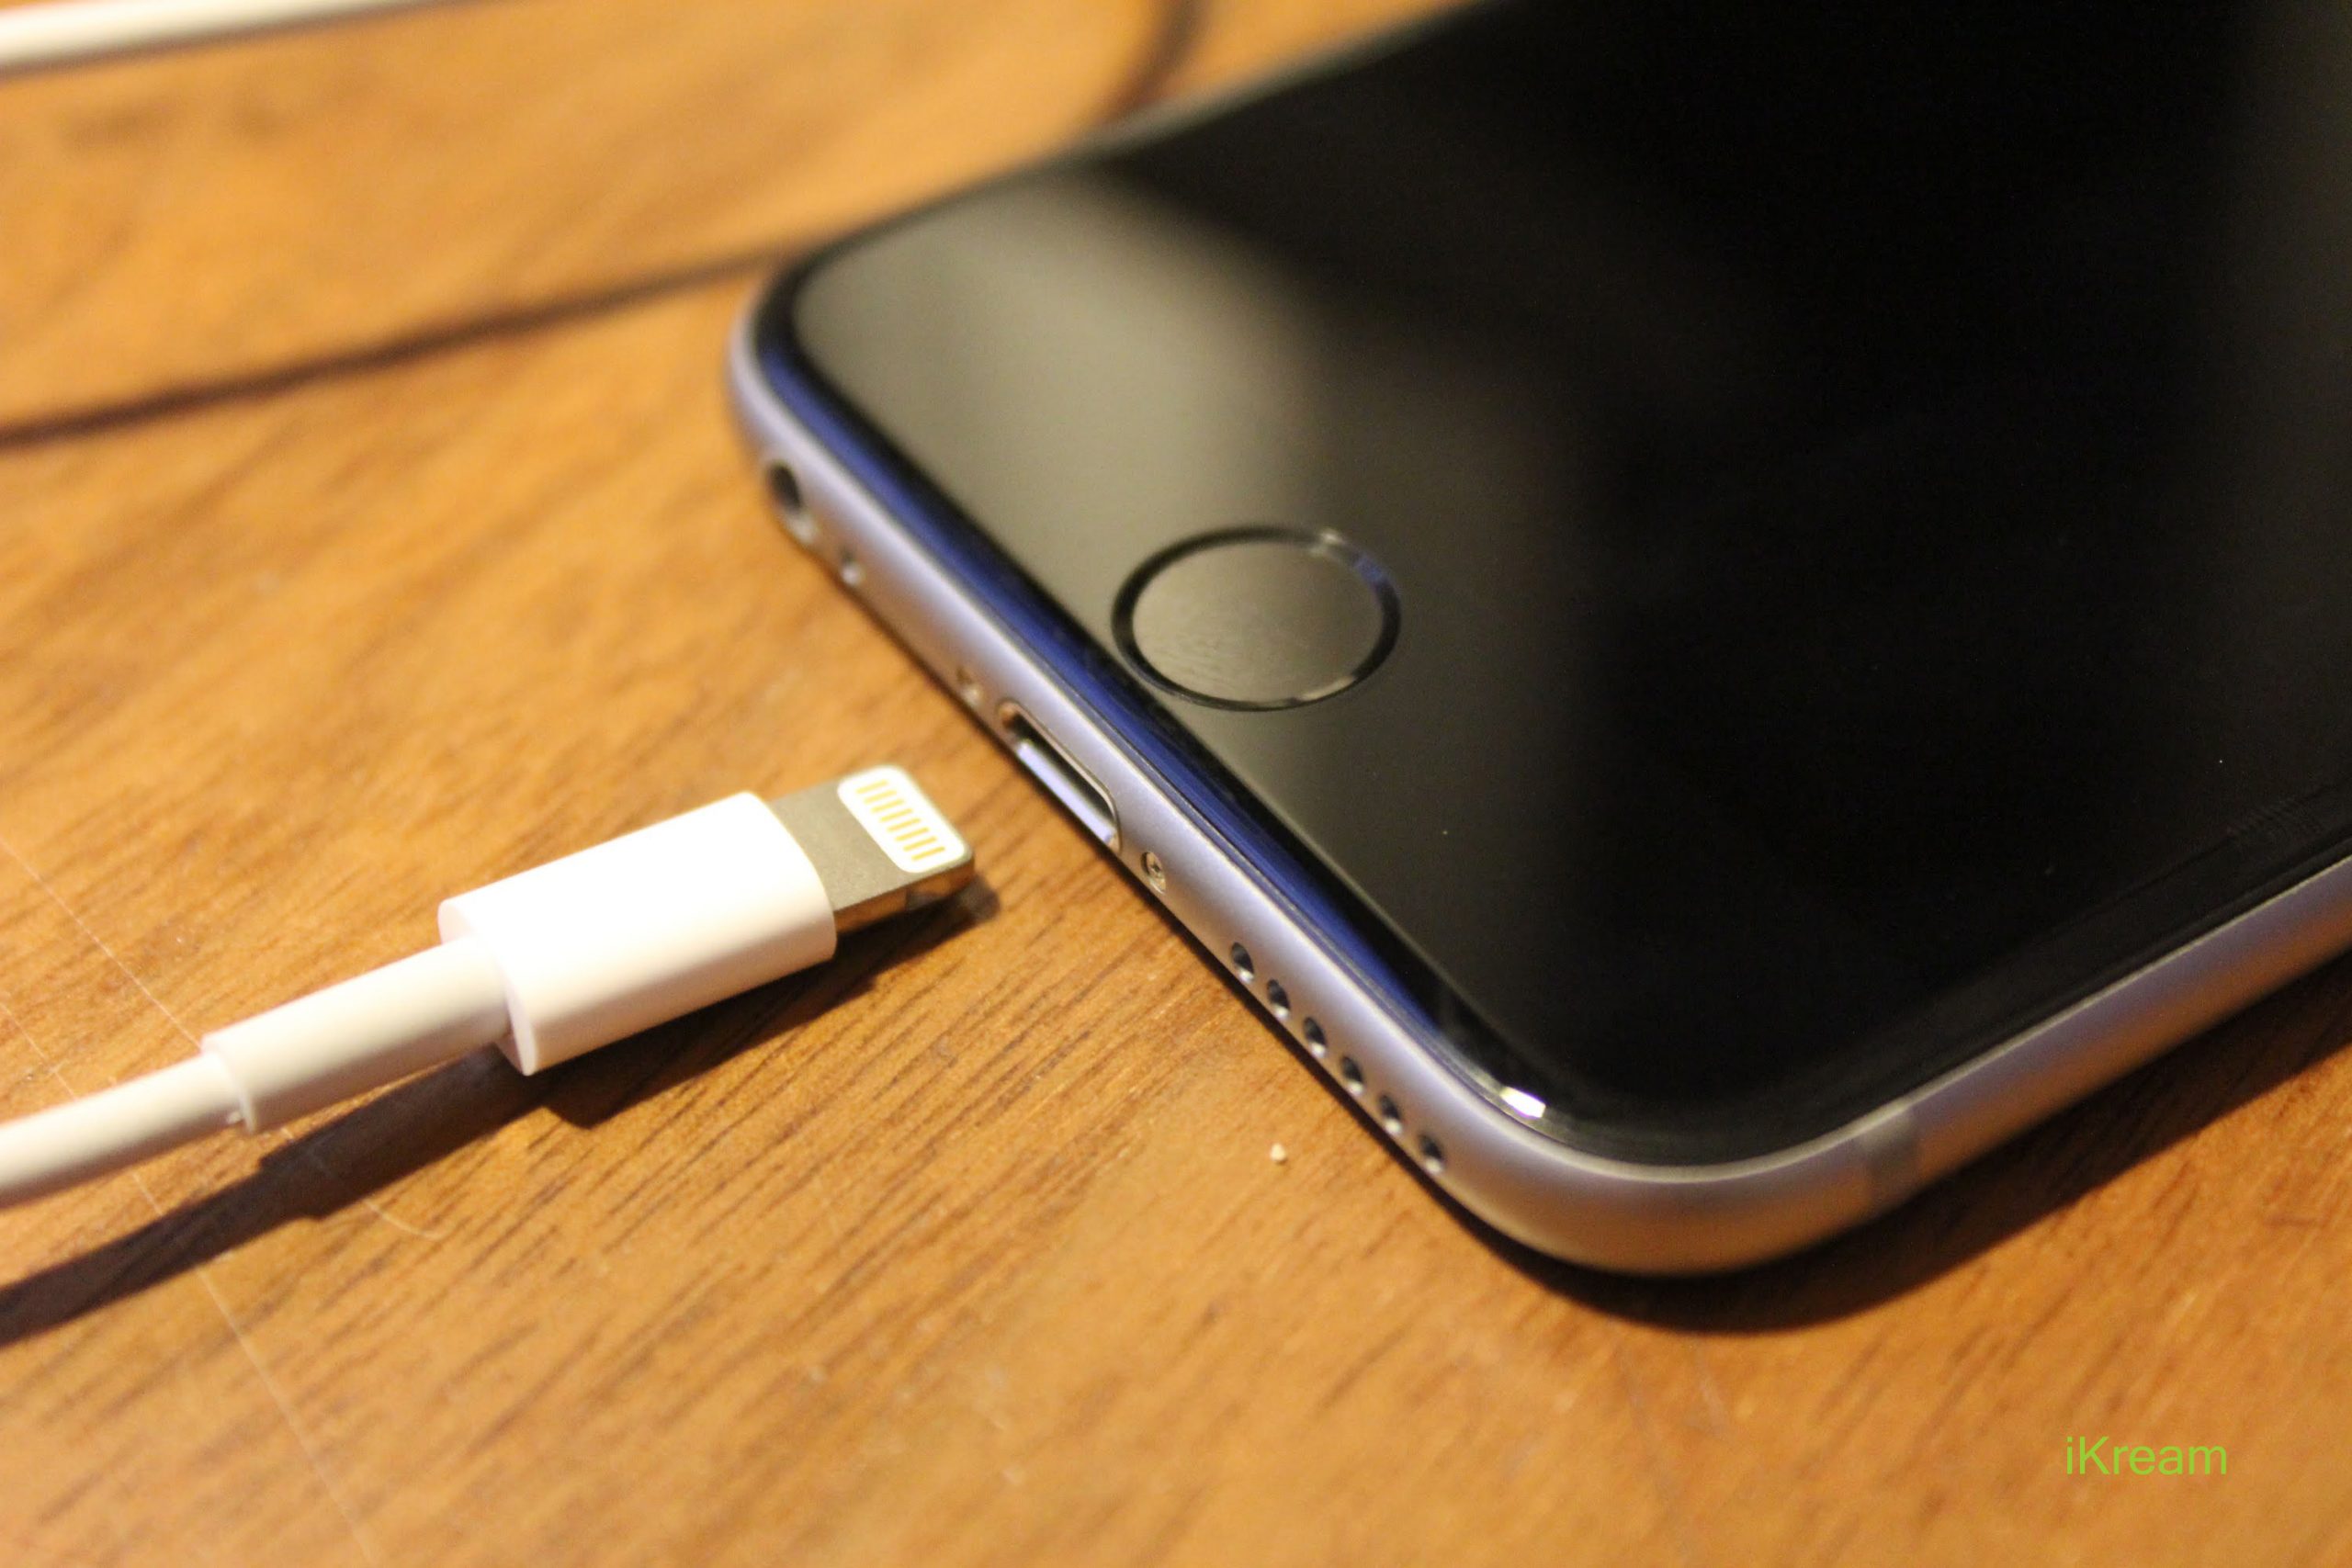 iOS sẽ báo bạn biết khi nào cần thay thế pin trên iPhone